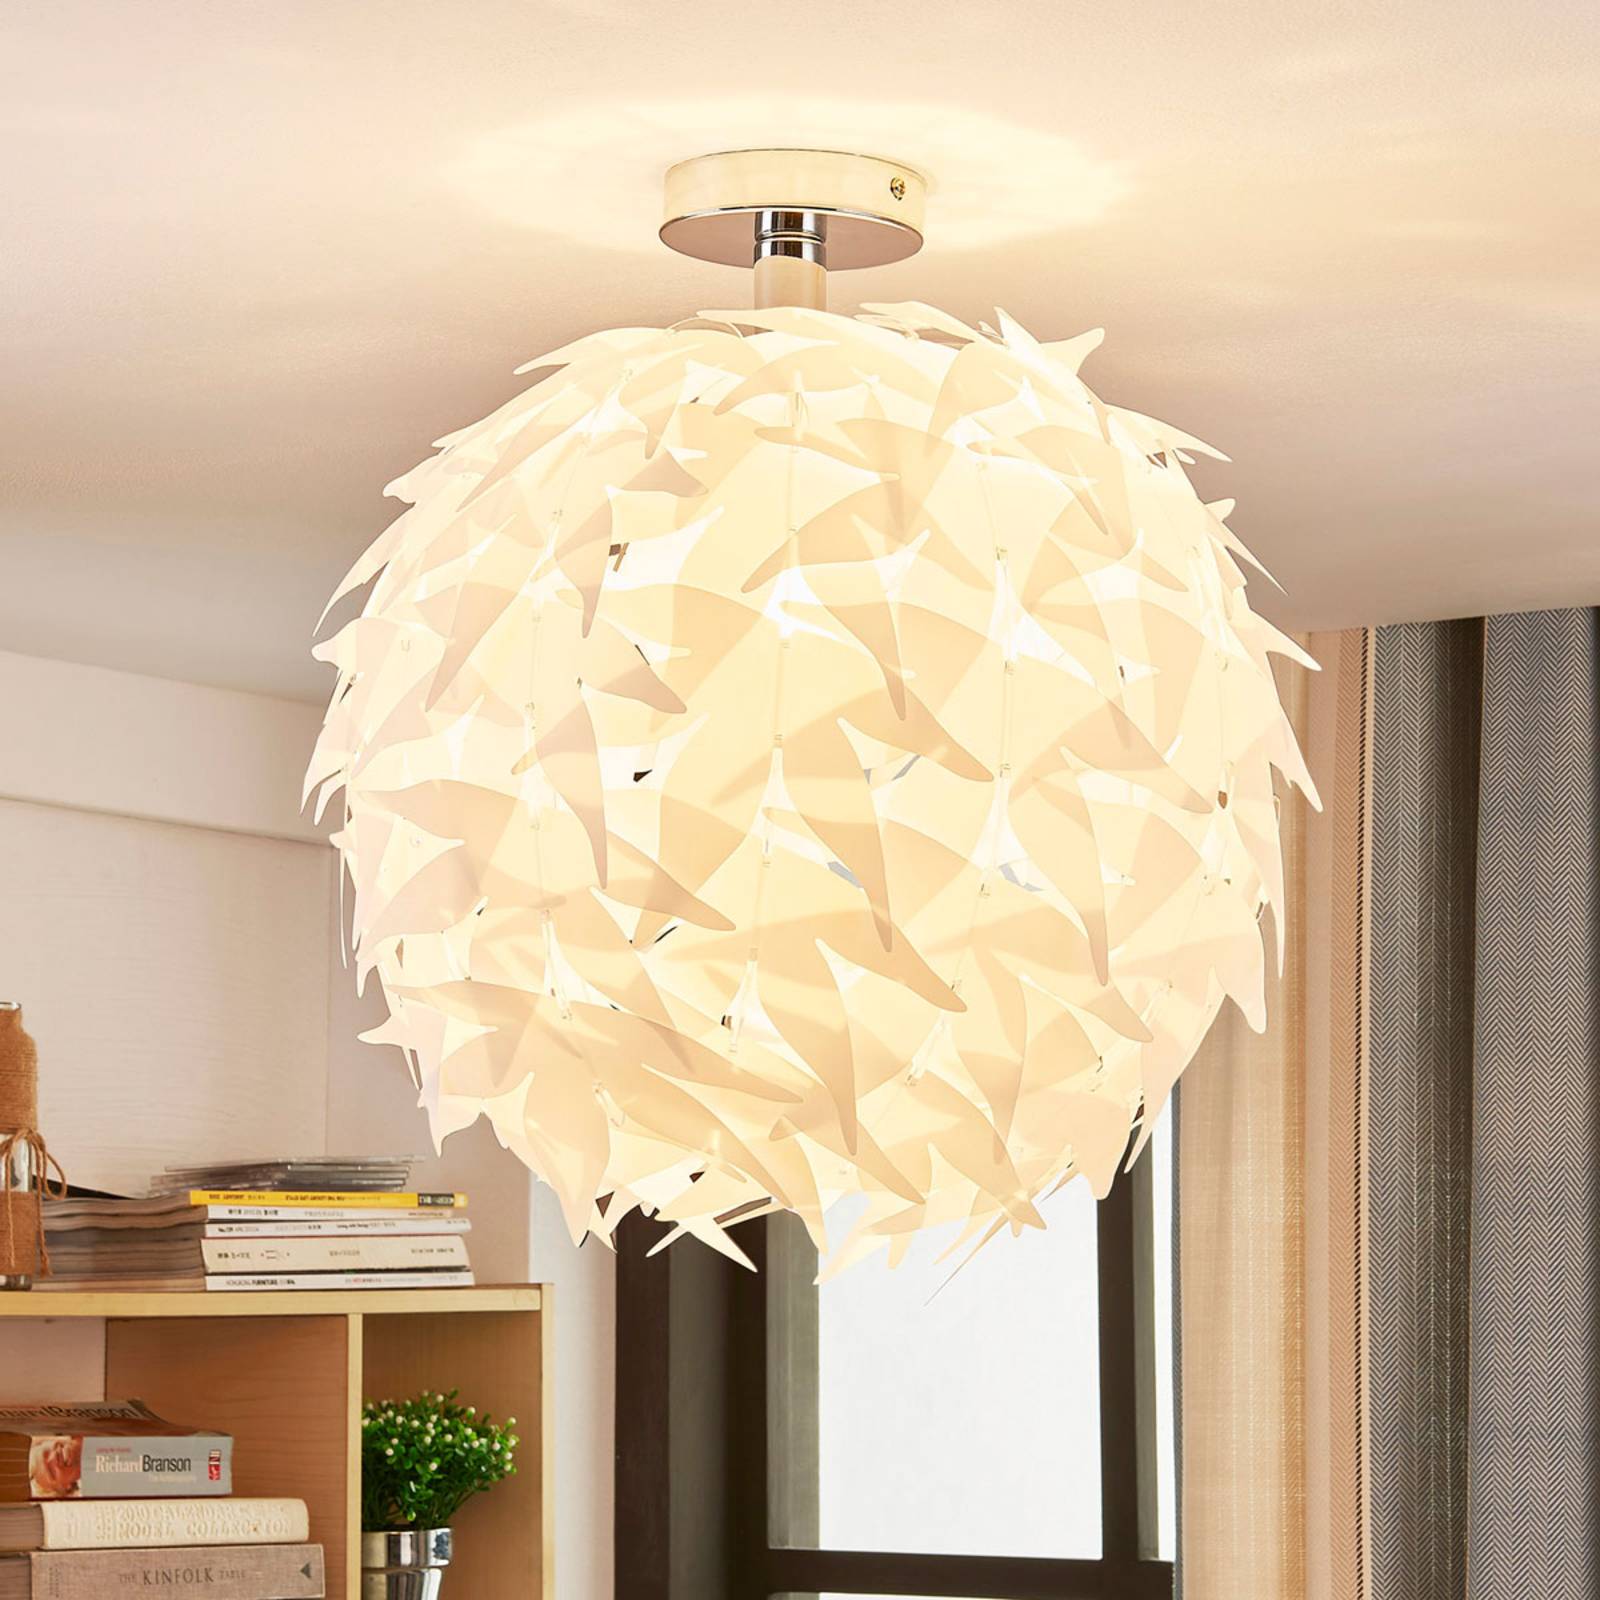 Corin – biała lampa sufitowa, trendy